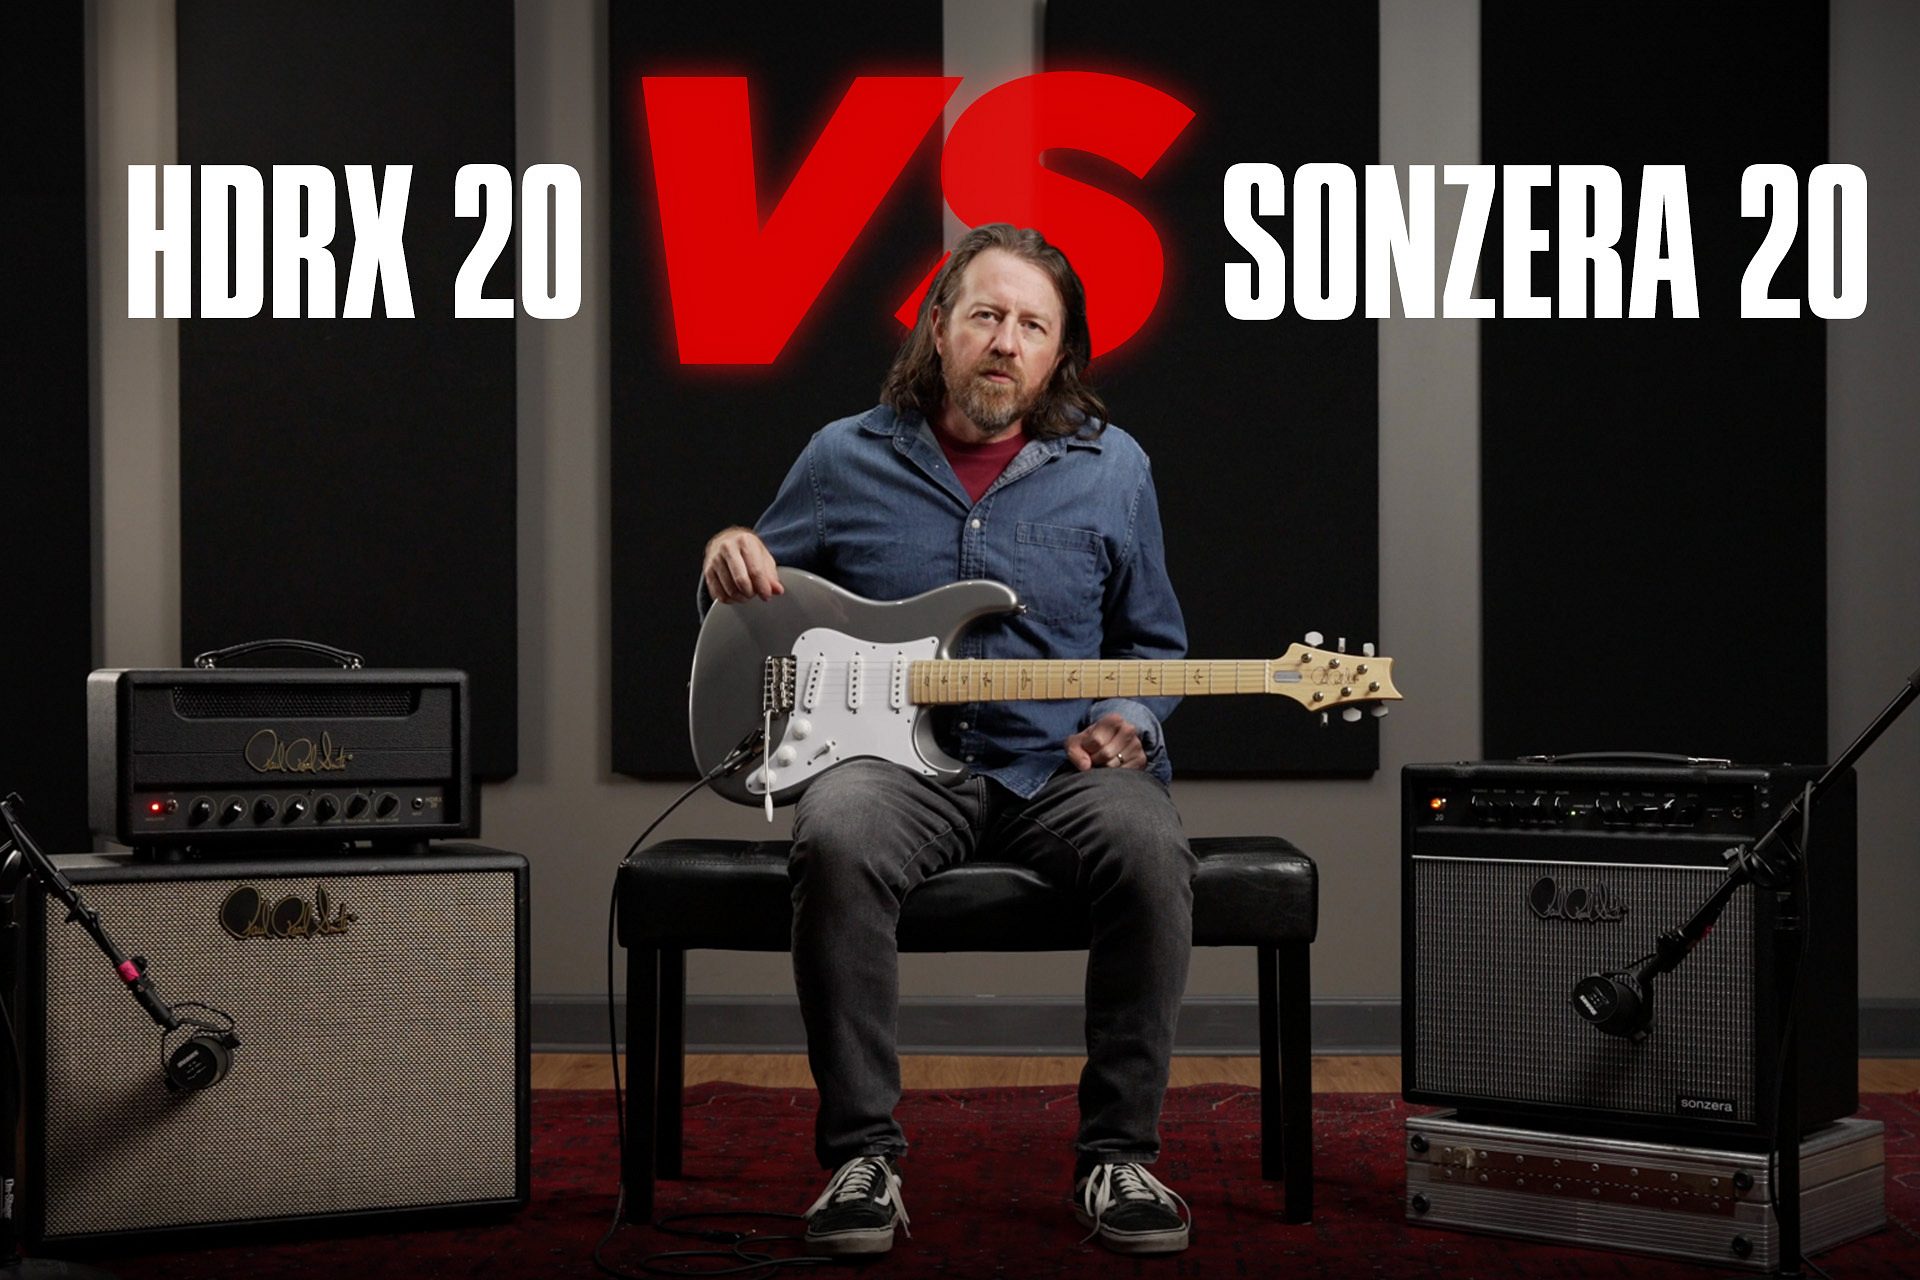 Comparing Tones: The HDRX 20 vs Sonzera 20